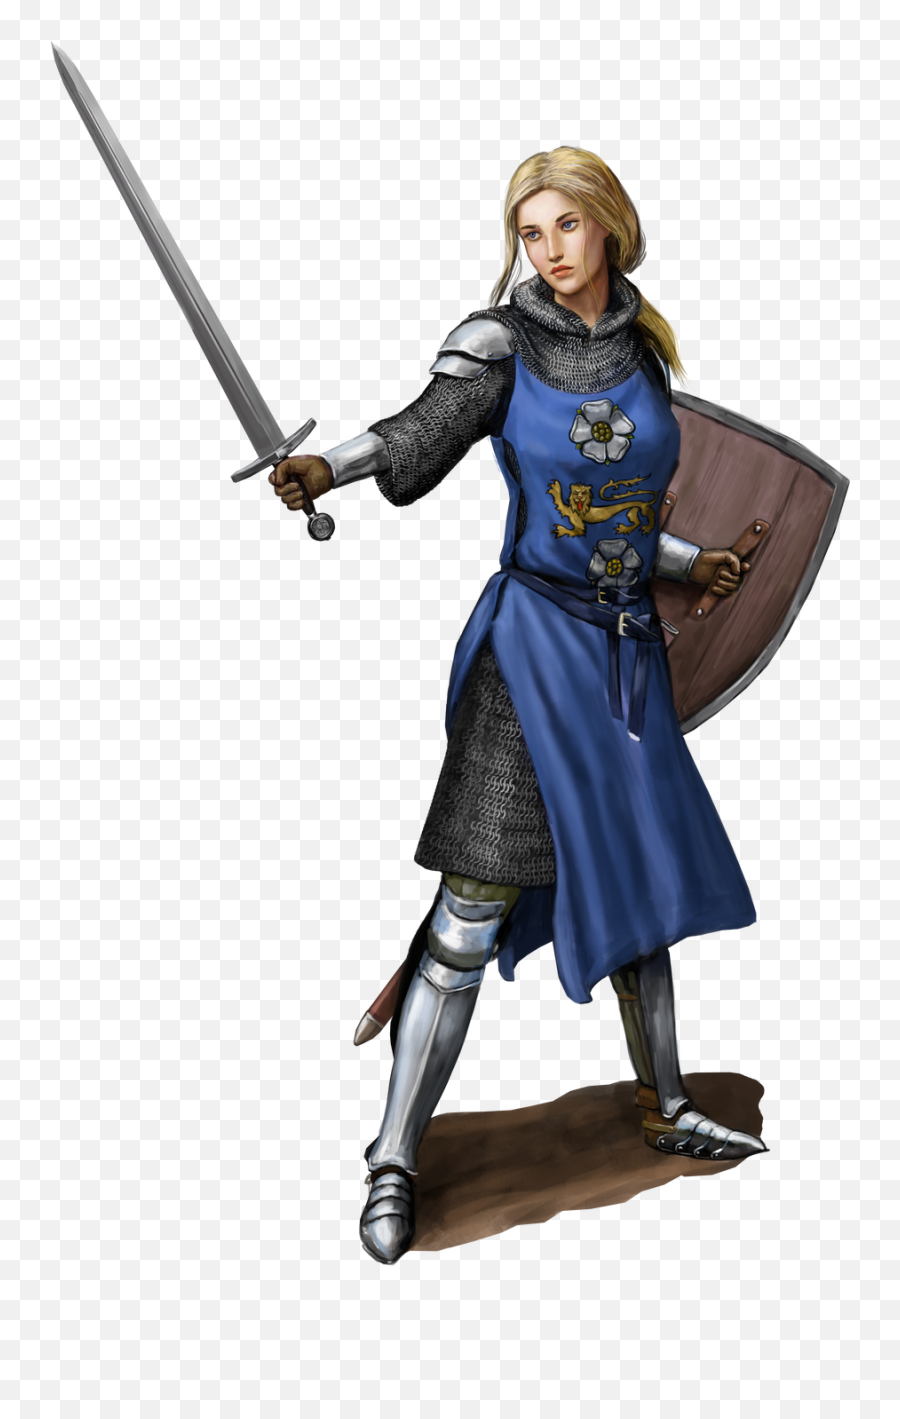 Female Knight - Knight Woman Transparent Emoji,Knight Transparent